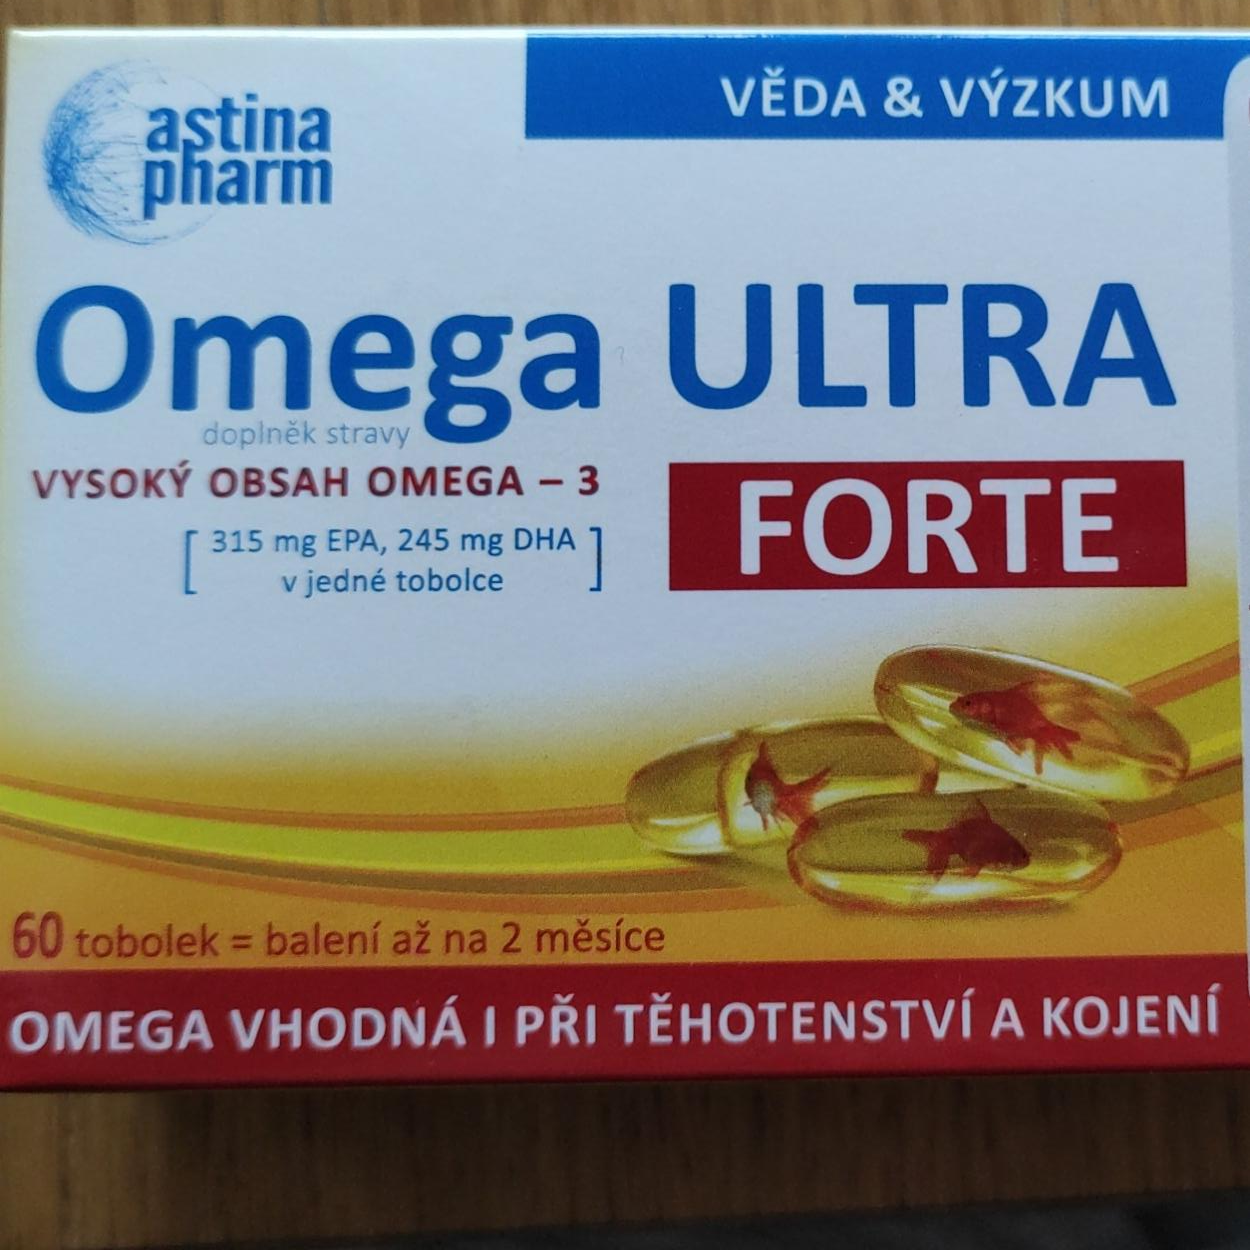 Fotografie - Omega Ultra Forte Astina pharm